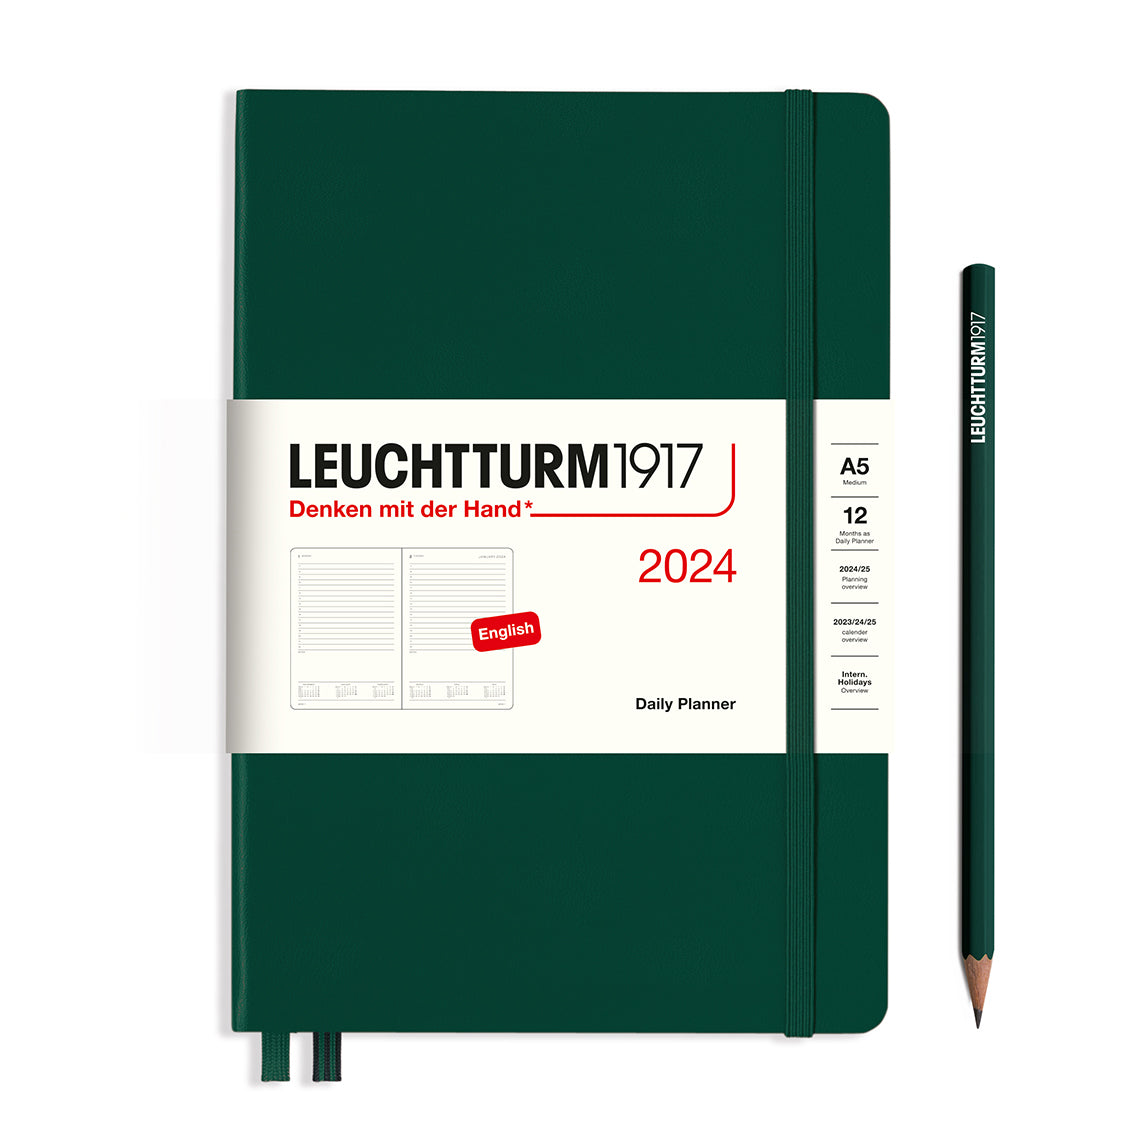 Leuchtturm Daily Planner - Medium (A5) 5 3/4" x 8 1/4"